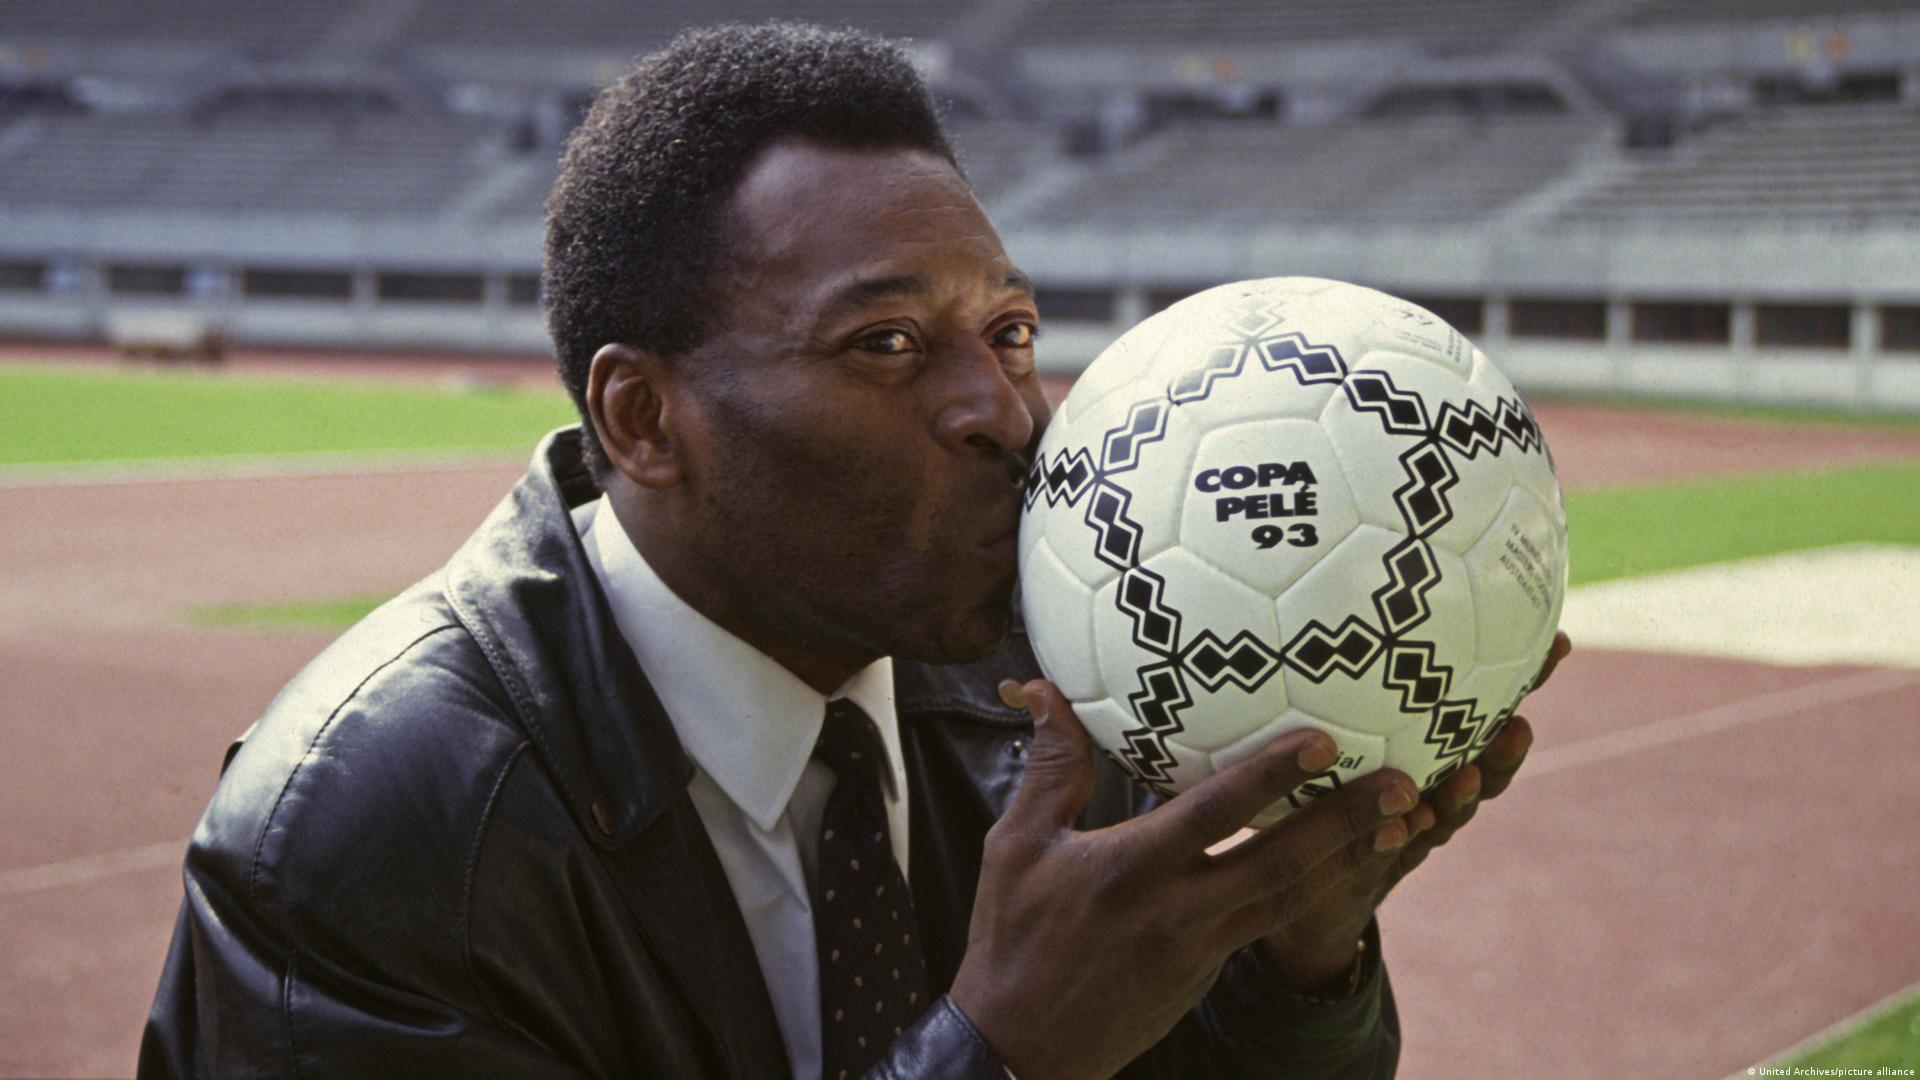 Oficial: Pelé vira verbete no Michaelis - Publicitários Criativos